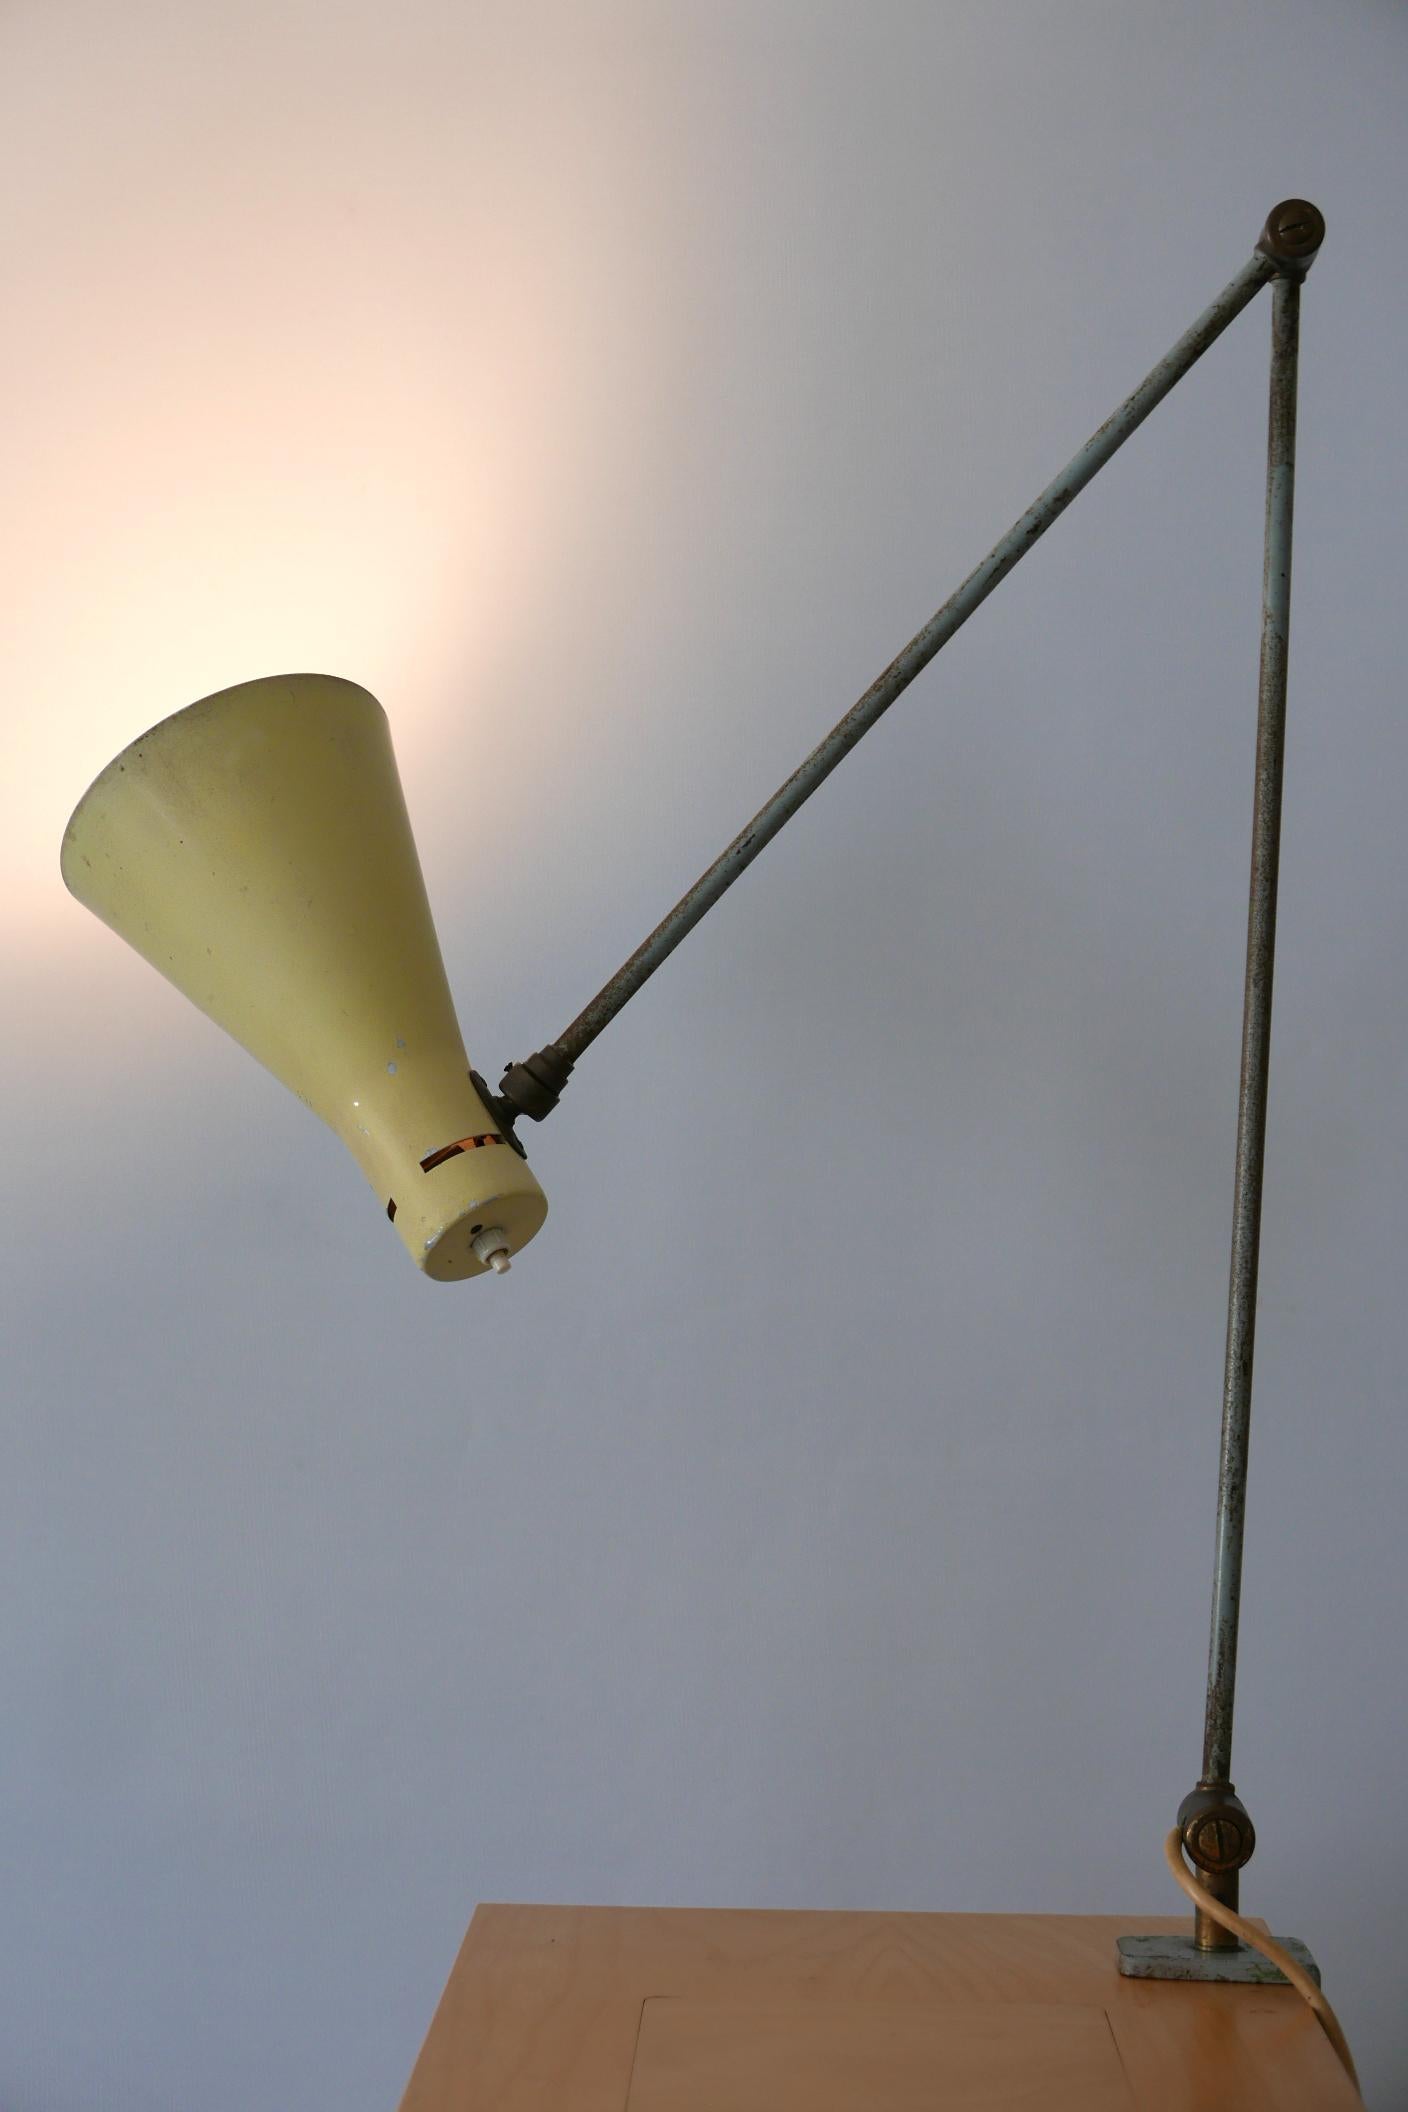 Äußerst seltene, gelenkige Mid-Century Modern Tischlampe oder Klemmtischleuchte. Entworfen von Vittoriano Viganò für Arteluce, 1950er Jahre, Italien.

Die aus Aluminium, Messing und Metall gefertigte Lampe benötigt 1 x E27/E26 Edison-Schraubbirne,